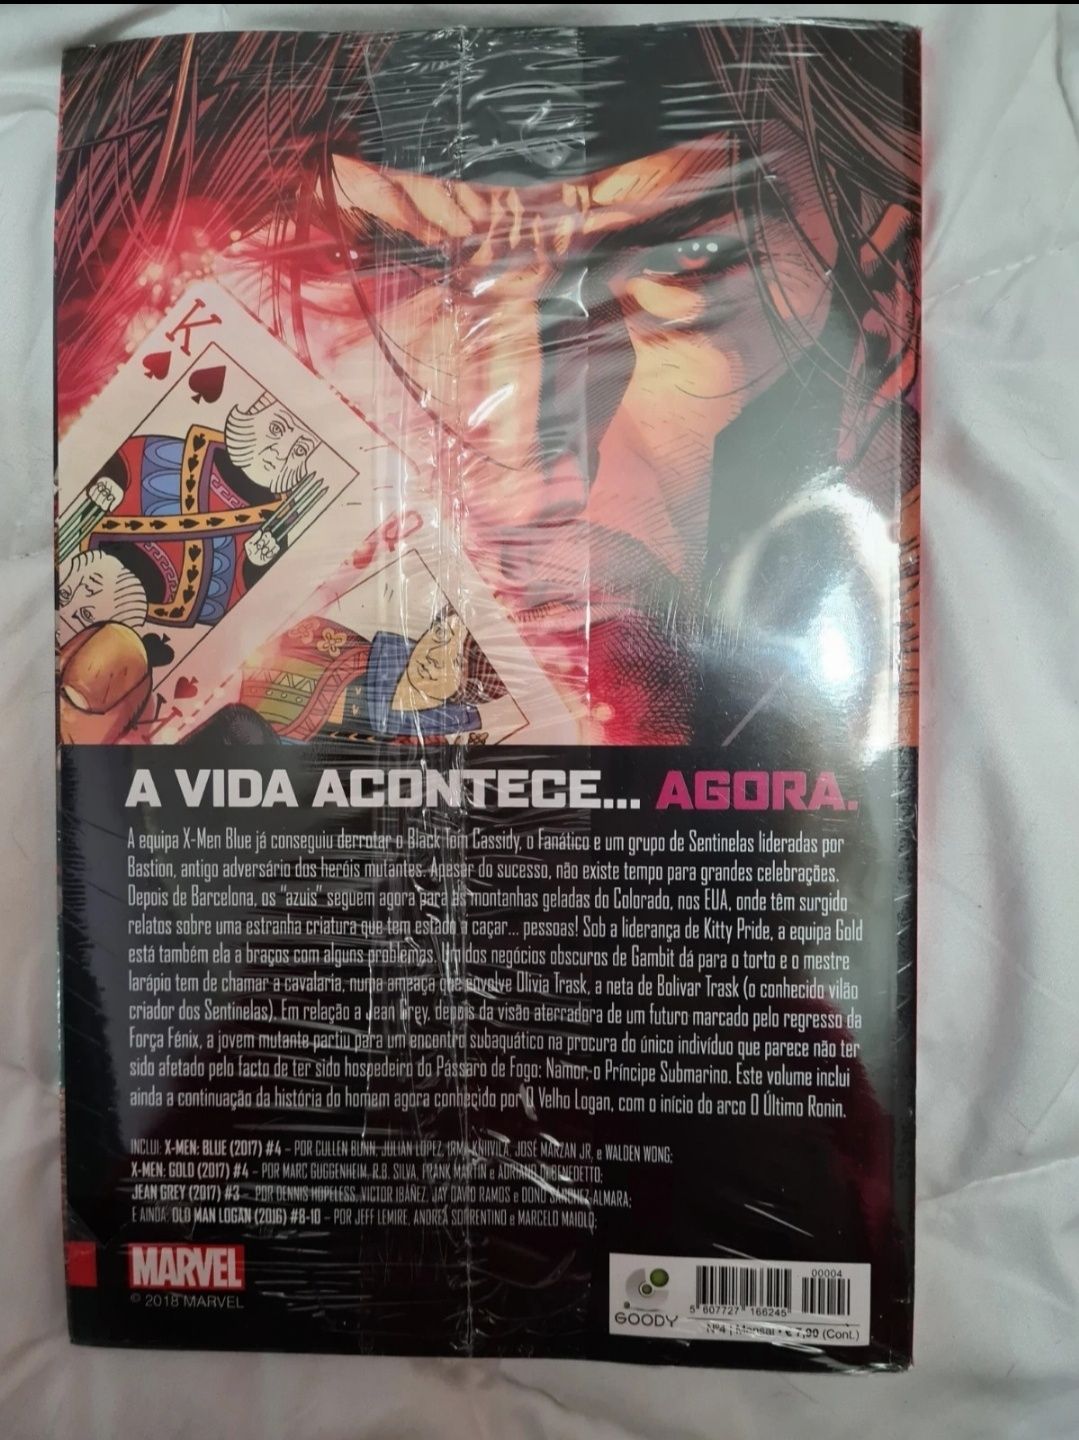 Livro "X-Men: Sorte, Acaso e Destino"